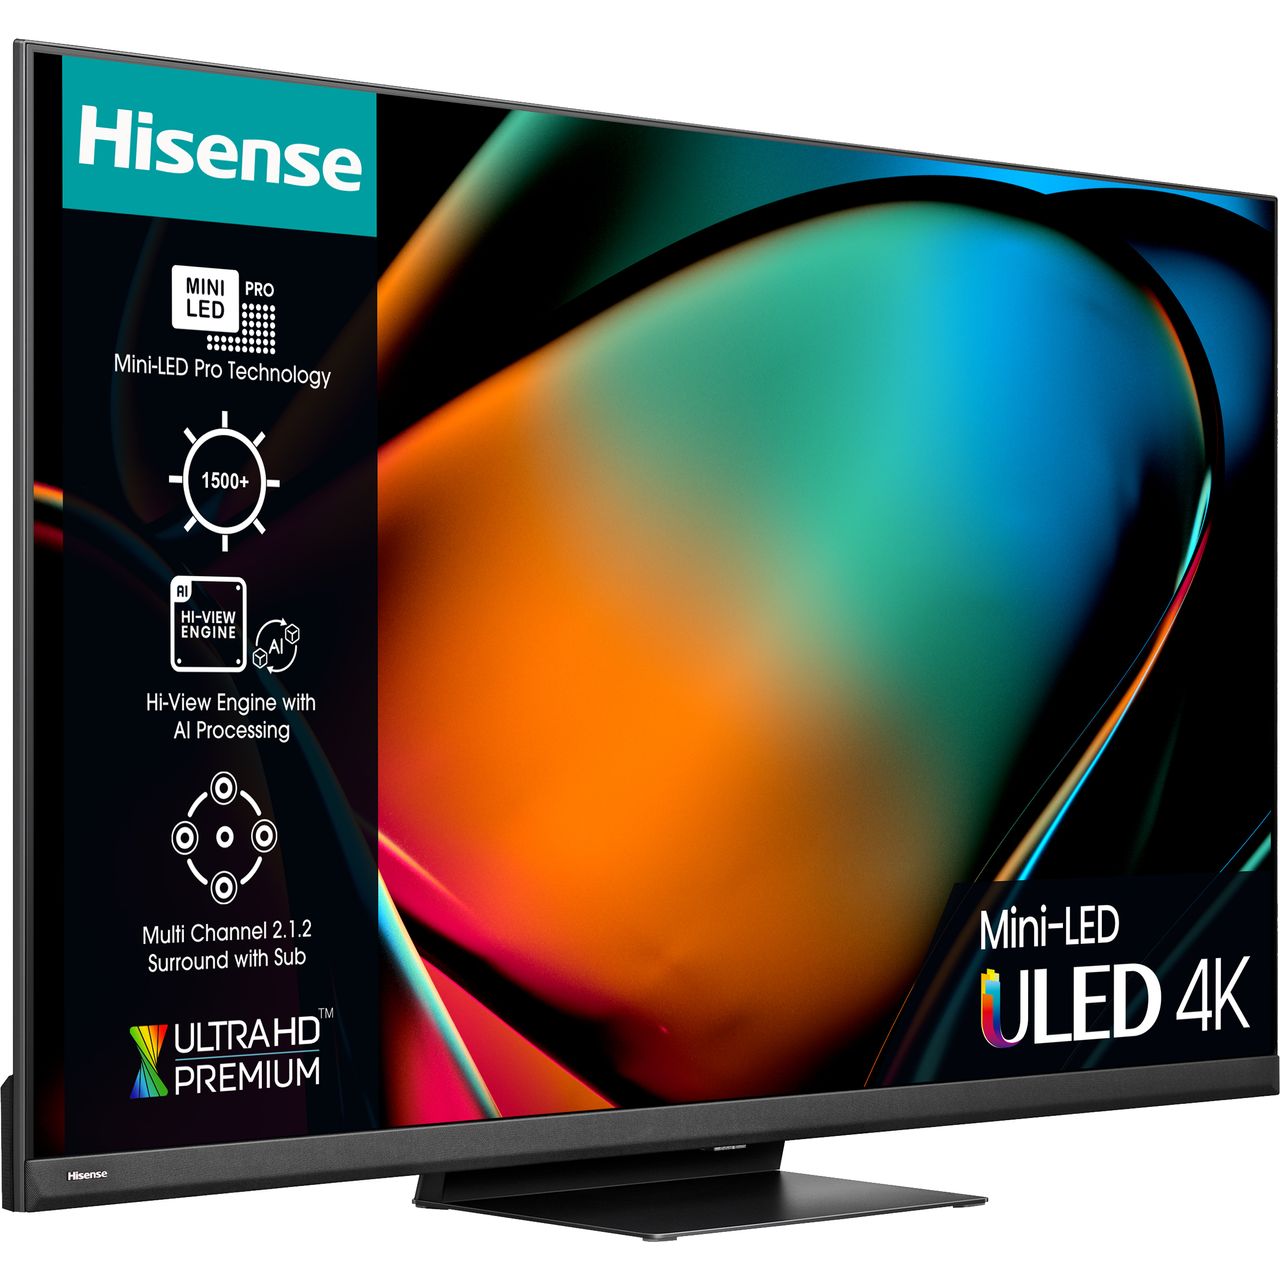 Hisense U8K Mini-LED 4K TV Unboxing & Impressions 